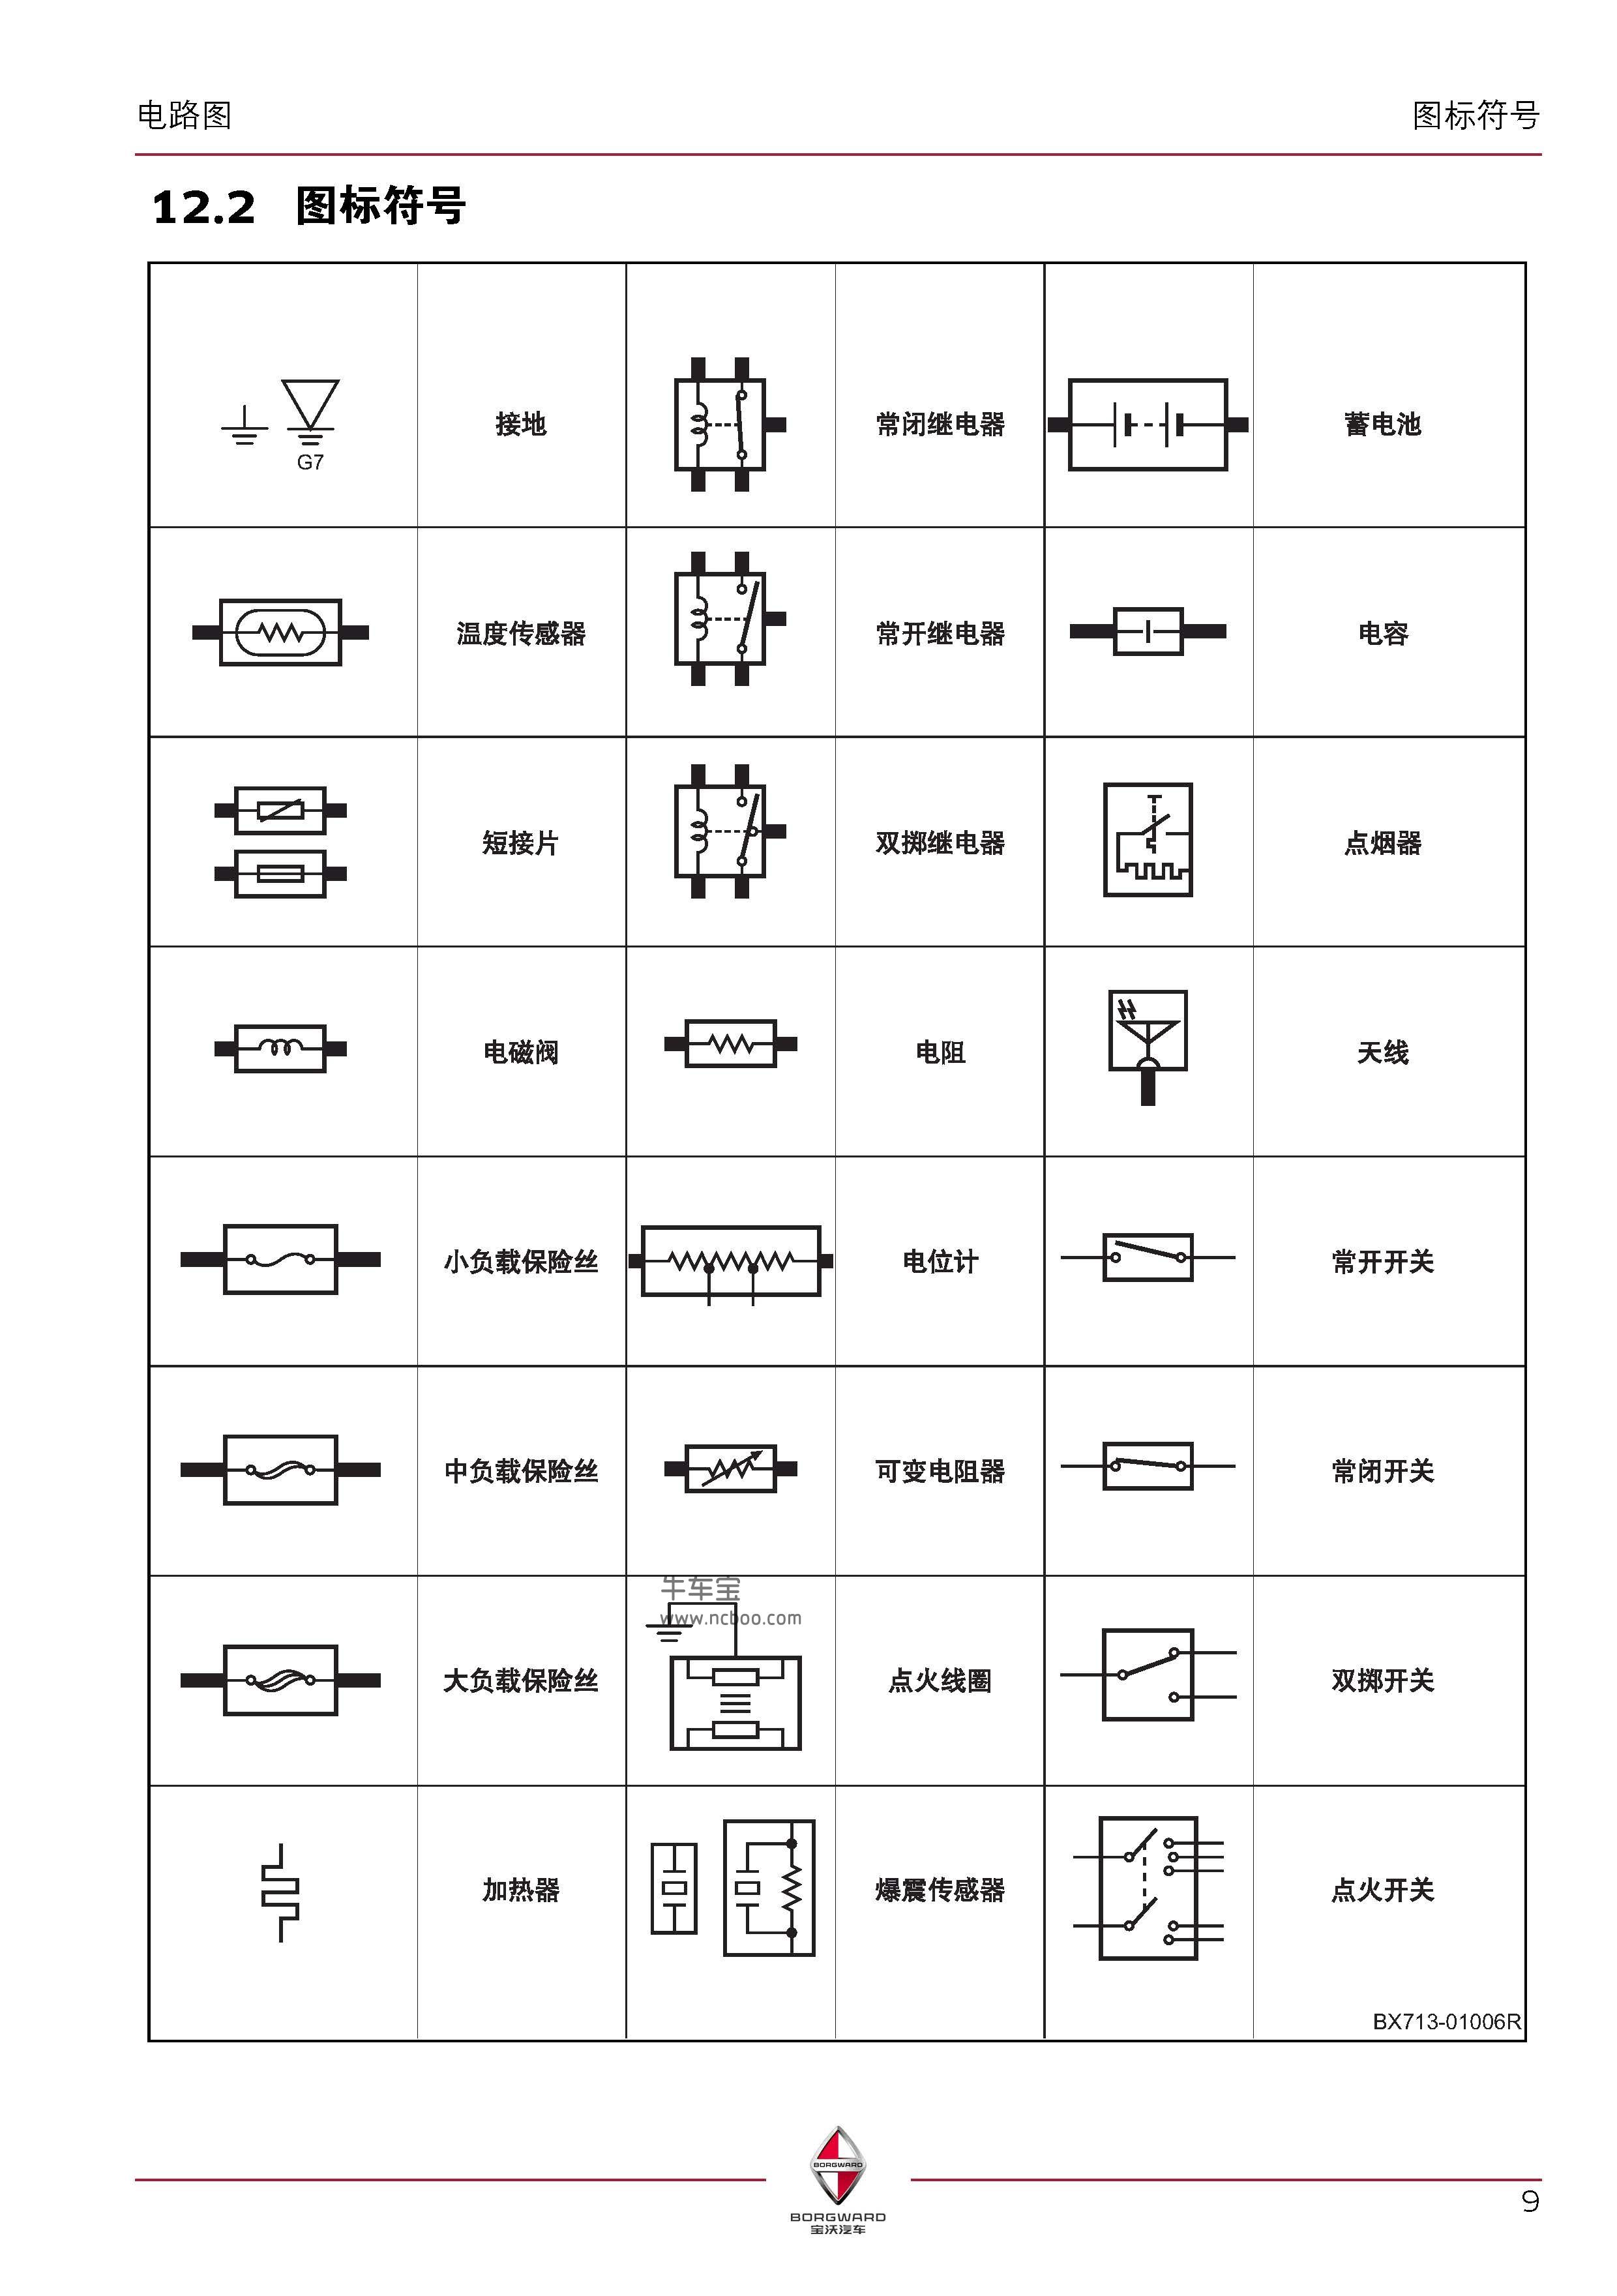 宝沃BX7电路图图标符号说明 图标符号代表什么